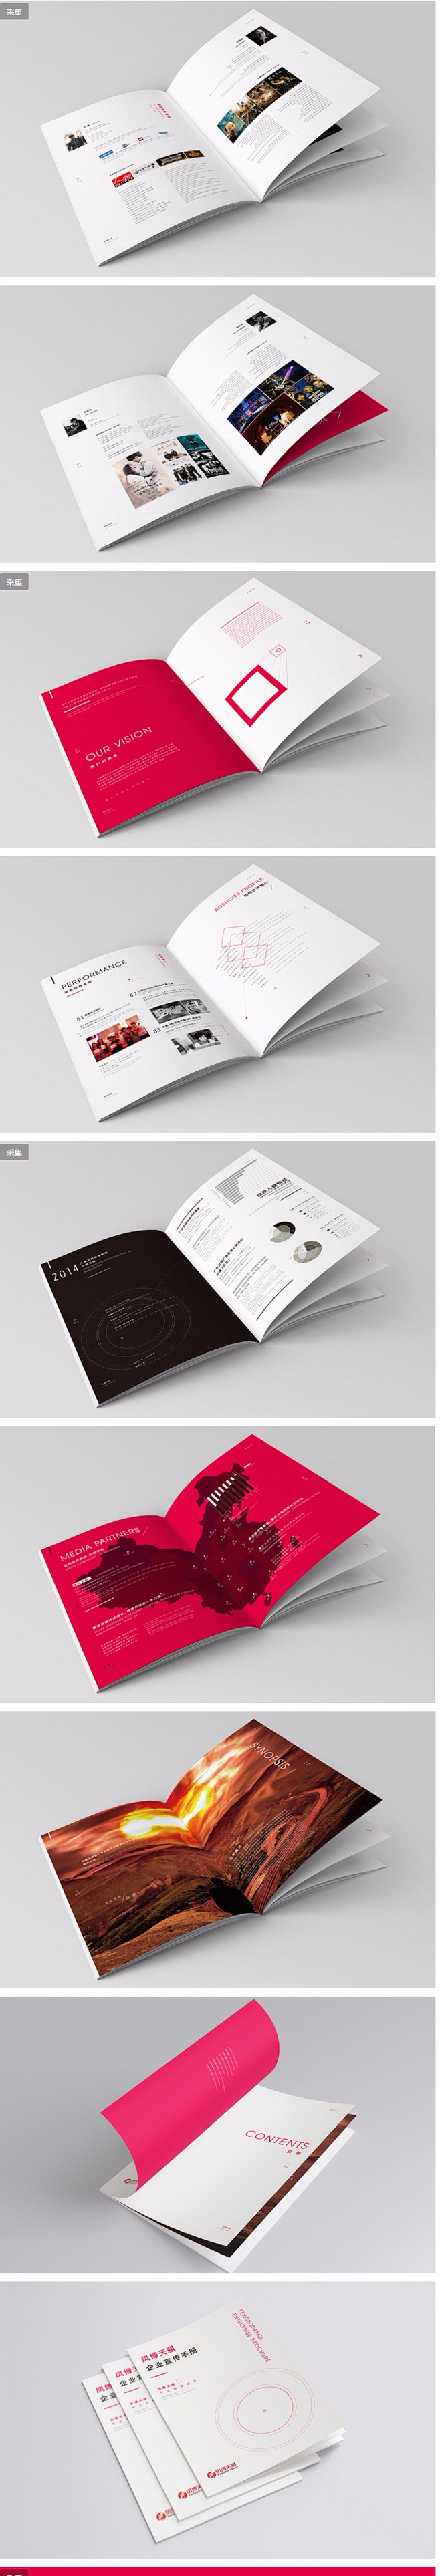 企业宣传画册手册设计欣赏 - 视觉中国设...